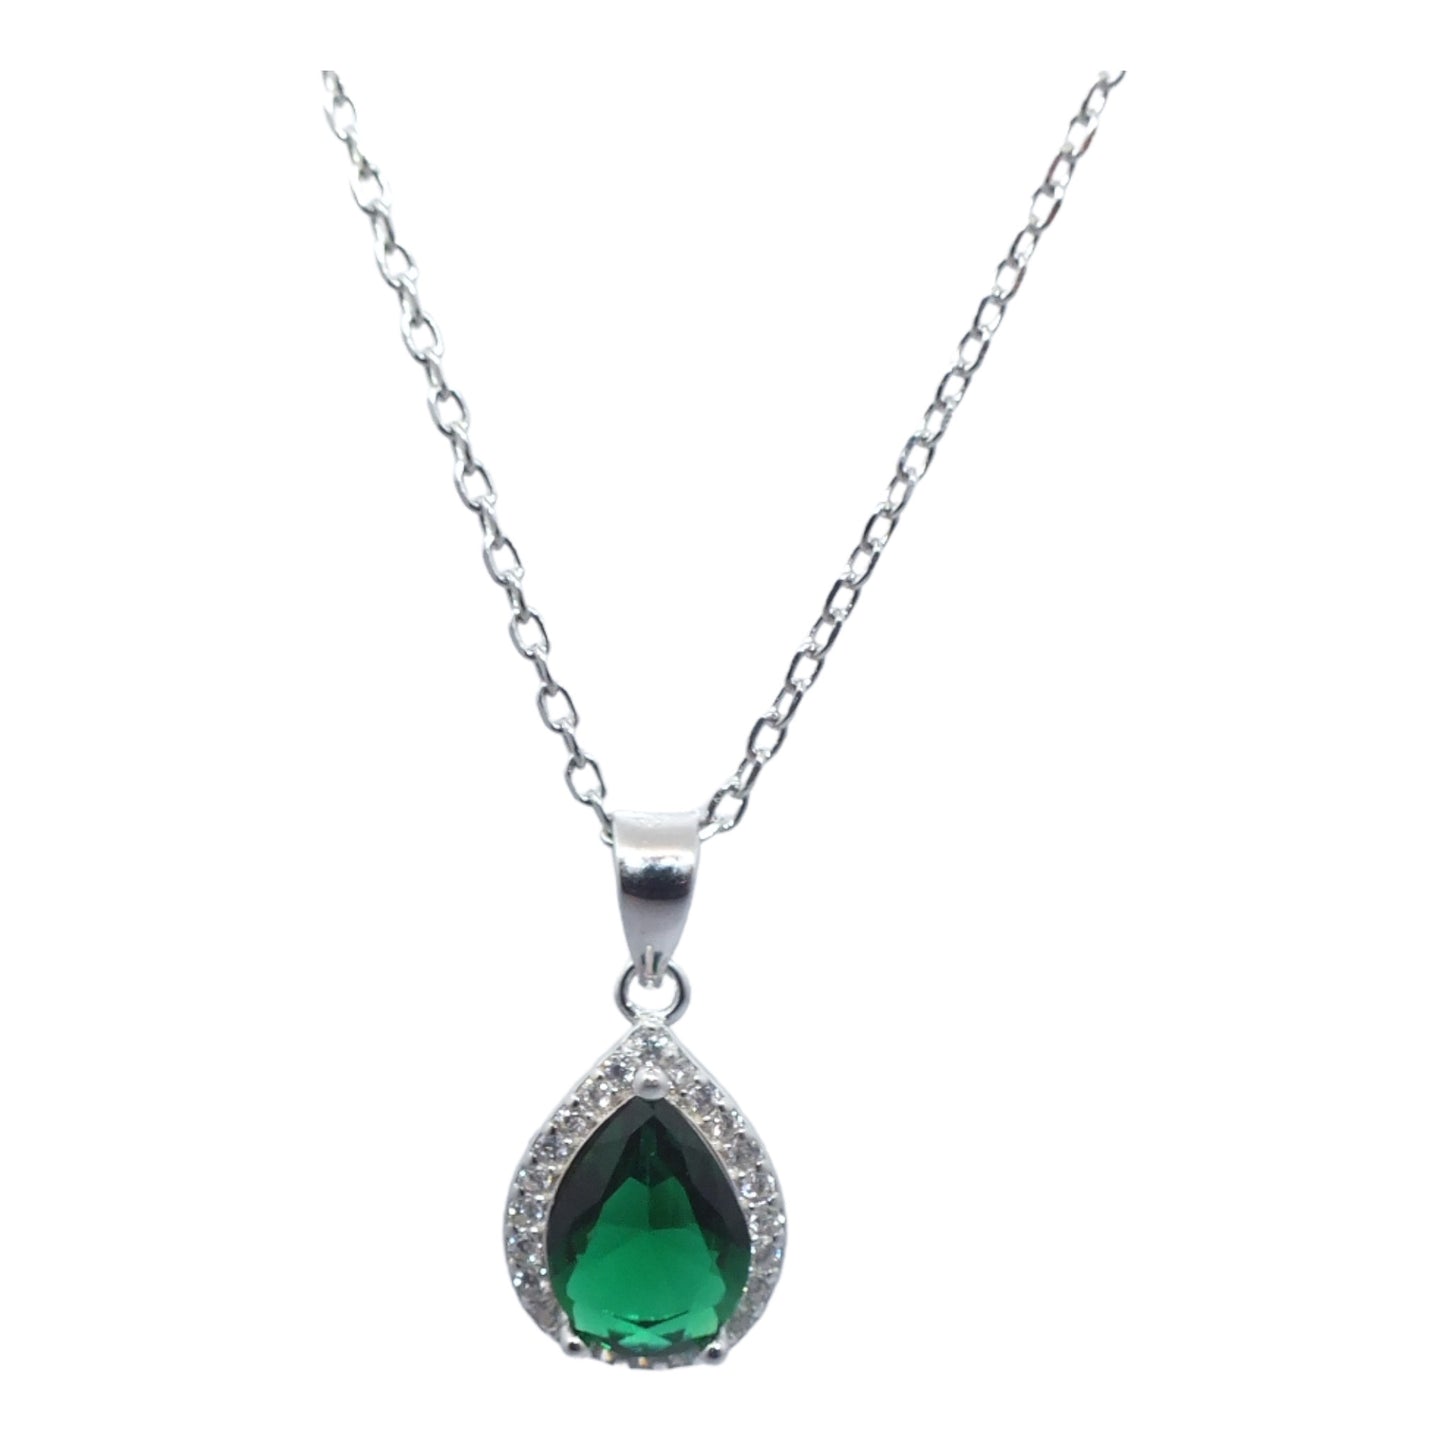 Green Stone Silver Necklace & Earrings Miniset- طقم فضة سلسال و حلق حجر اخضر